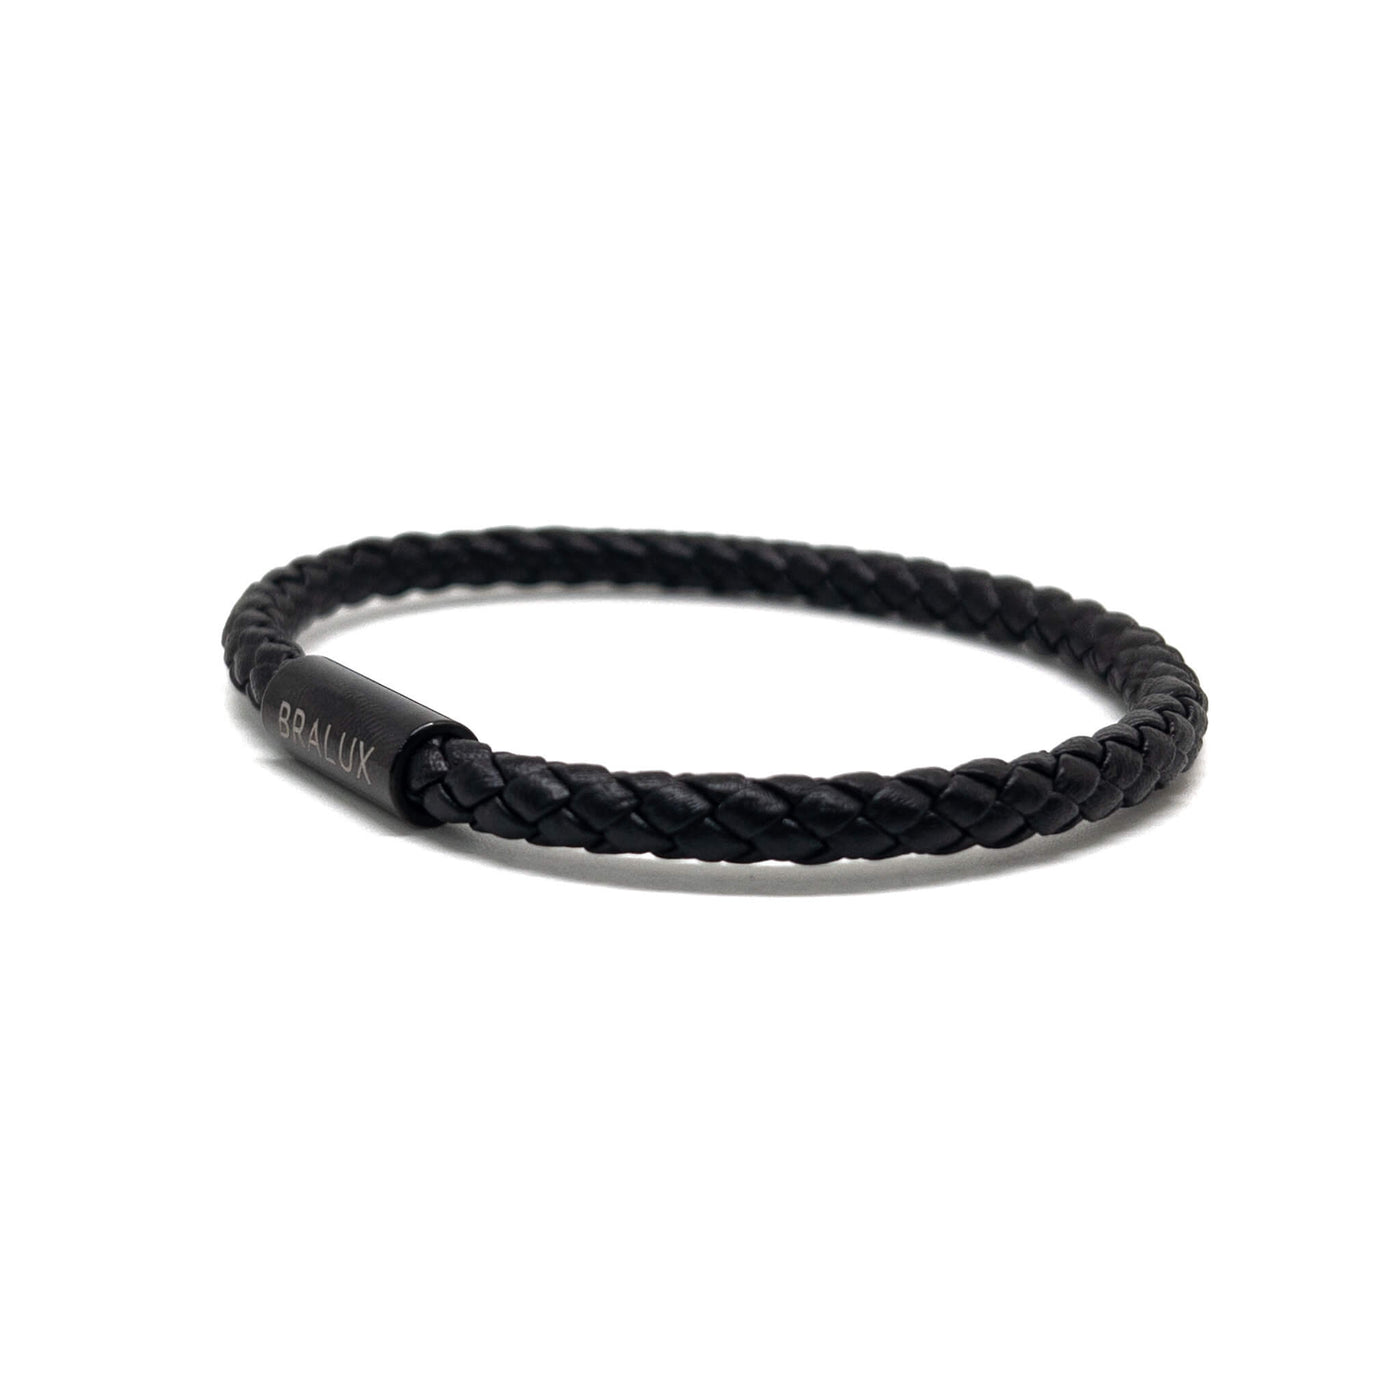 The 5mm Full Black Leather Bracelet